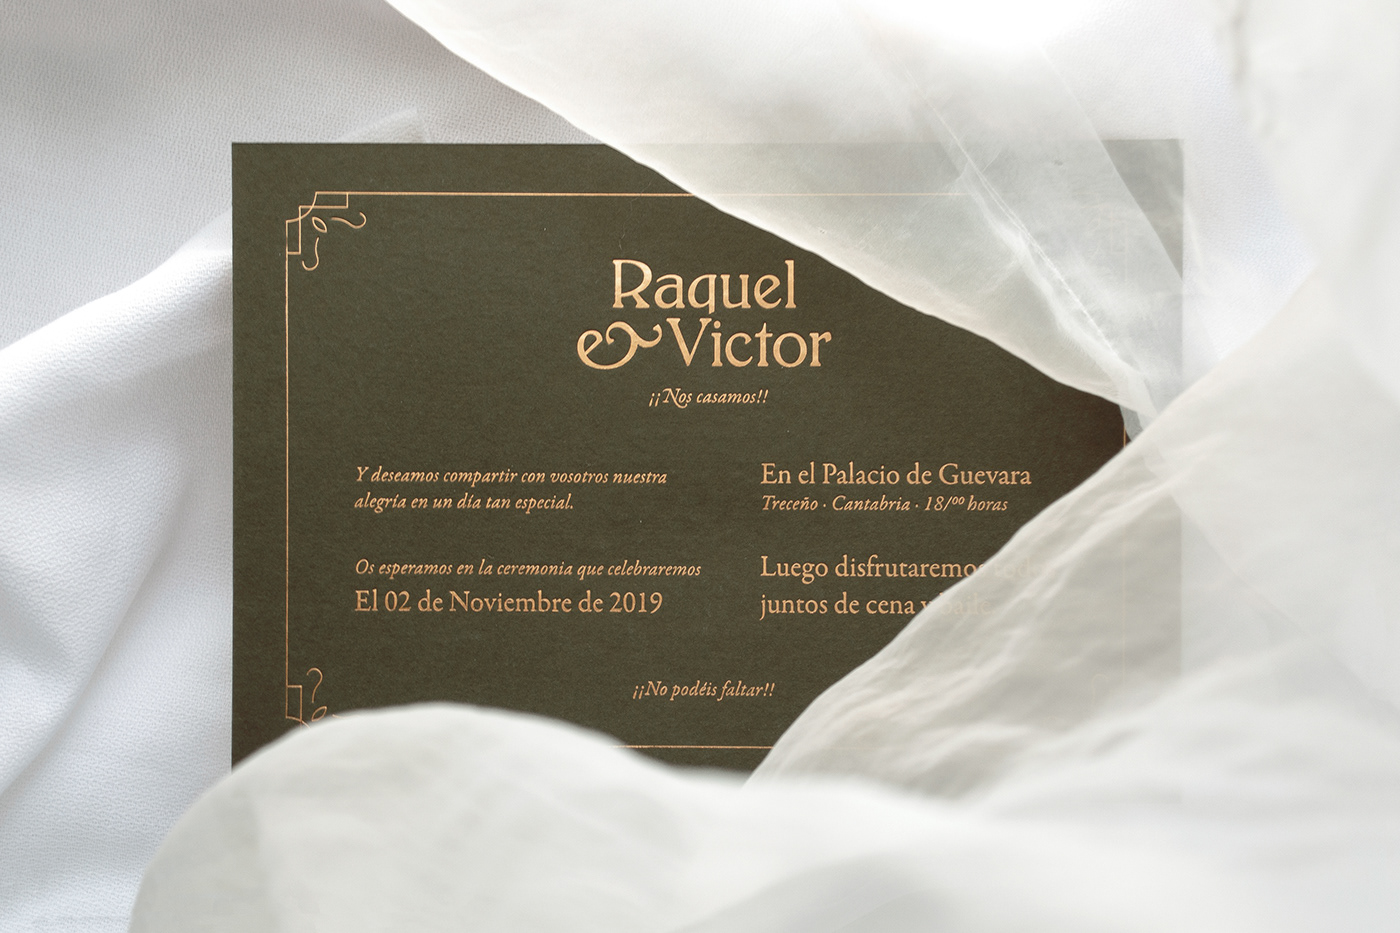 Raquel & Victor wedding invitation 